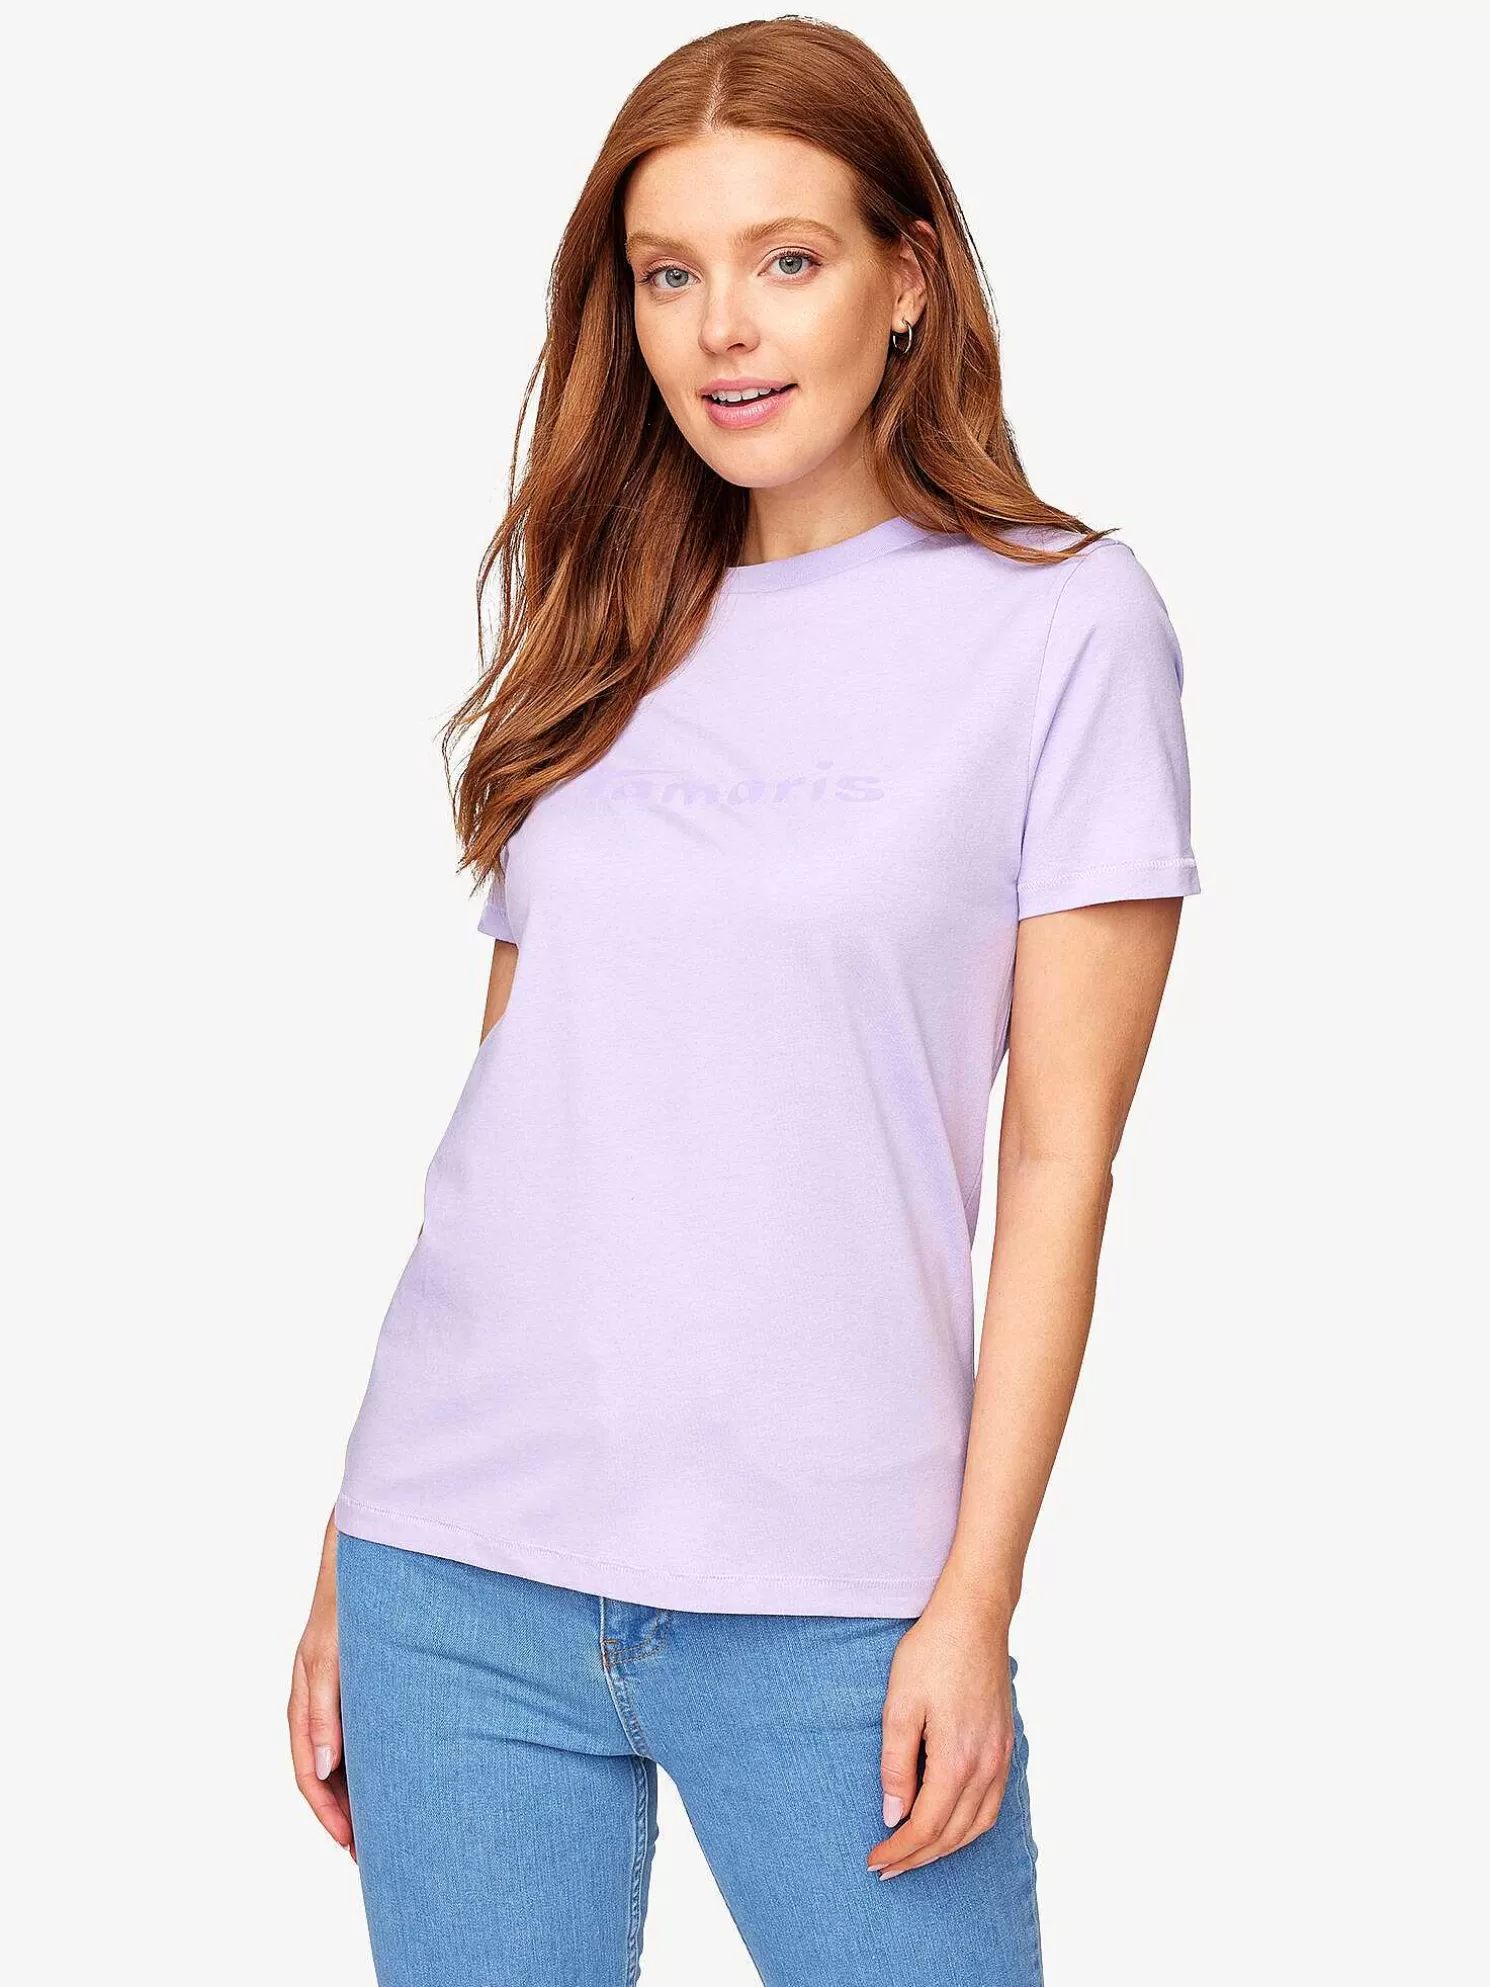 T-Shirt - Lila*Tamaris Shop